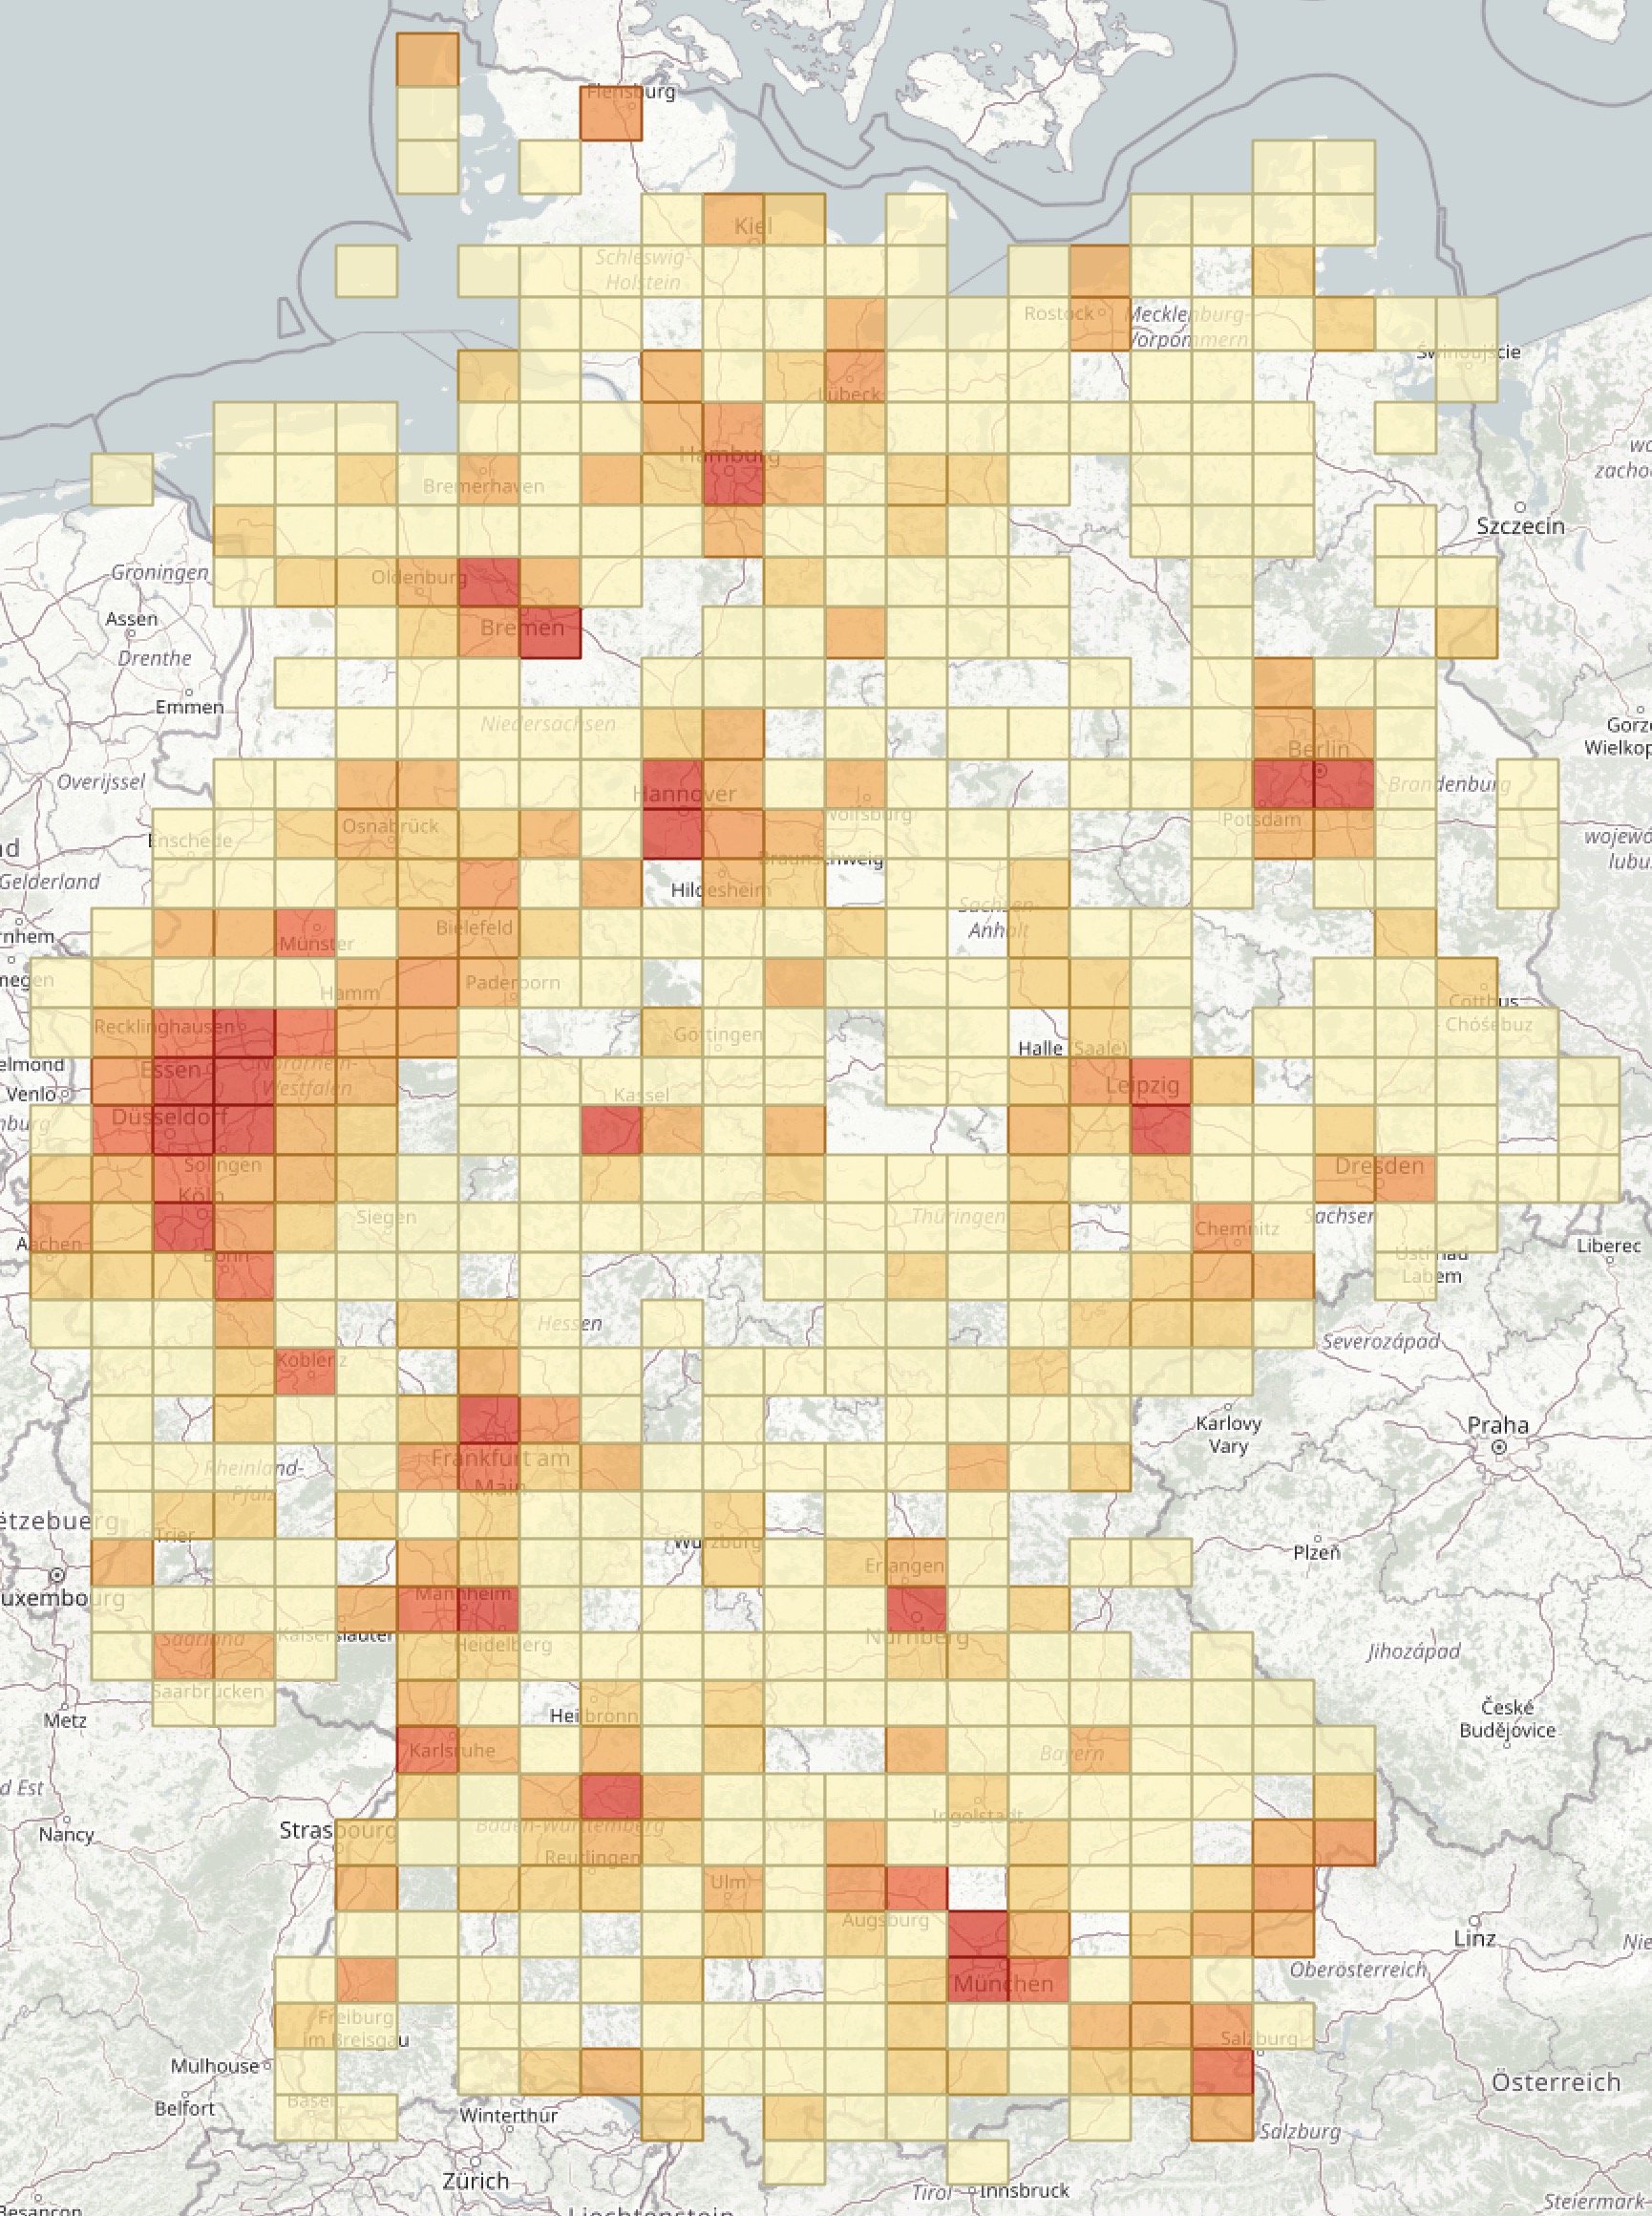 sample distribution image